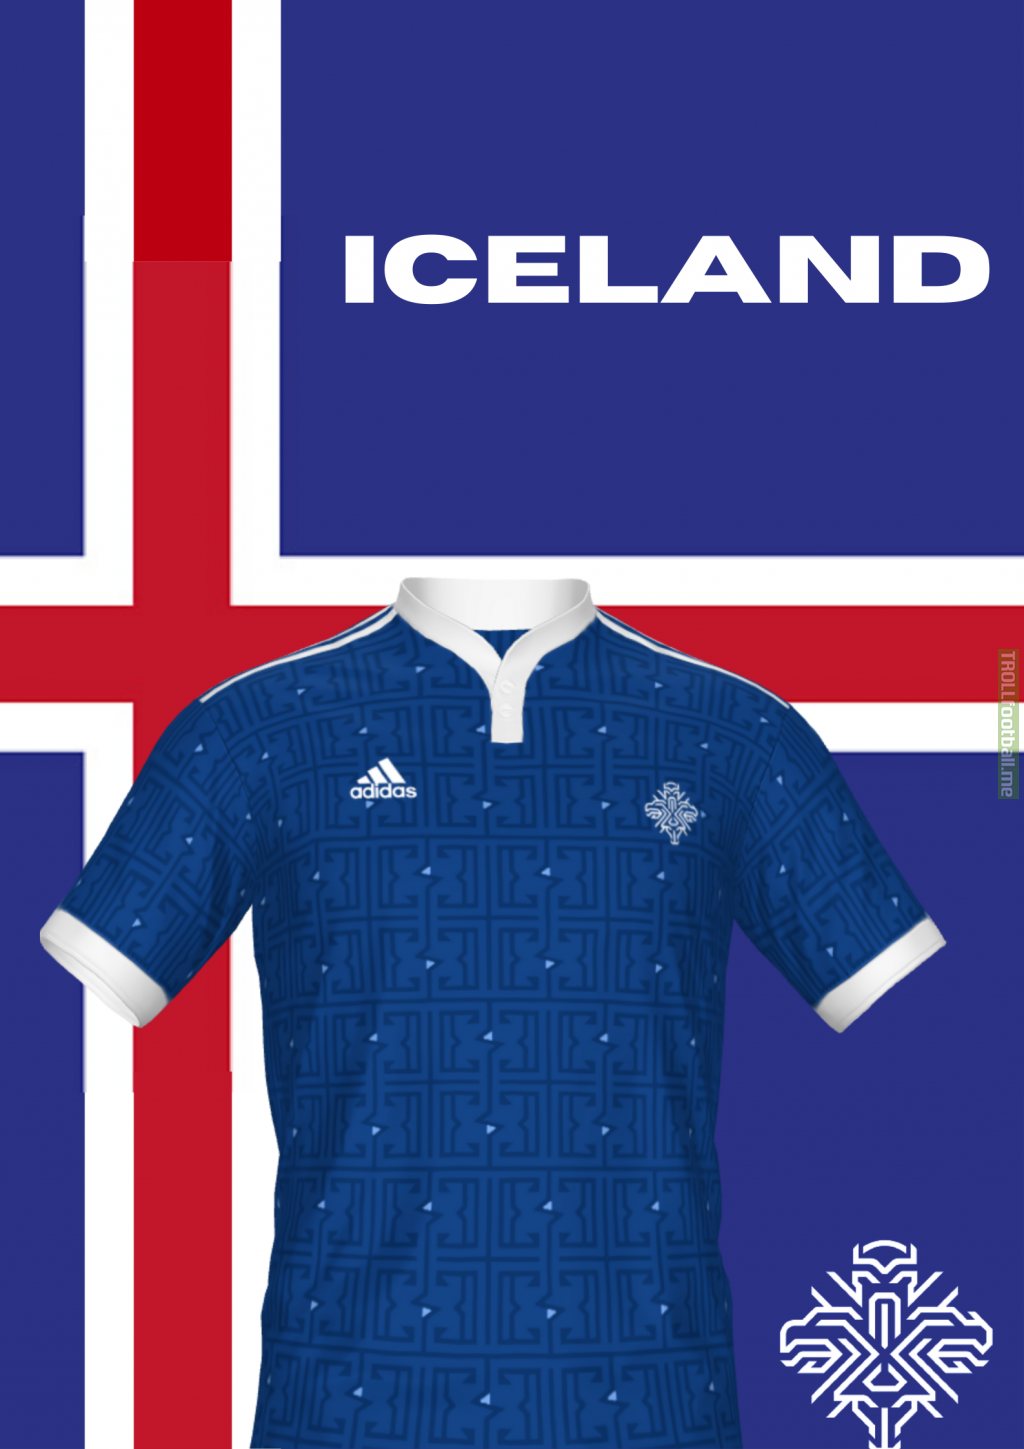 Iceland Kit I made + custom graphic